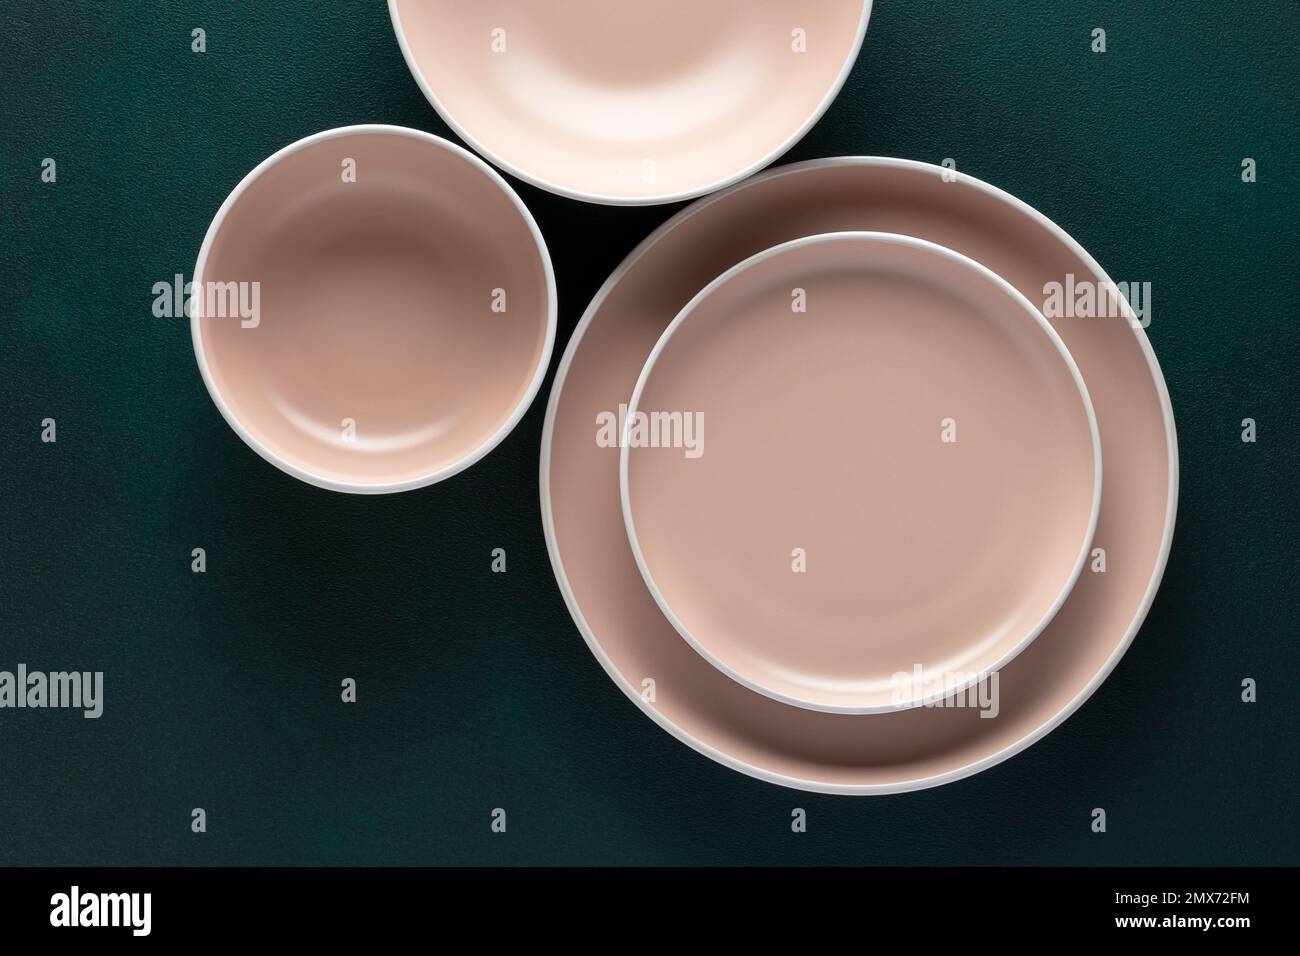 Drei leere beige Platten auf einem dunkelgrünen Tisch, Grunge-Hintergrund. Draufsicht. Karten- oder Menüvorlage, flach liegend, minimalistisches Design. Geschirr, Geschirr Stockfoto